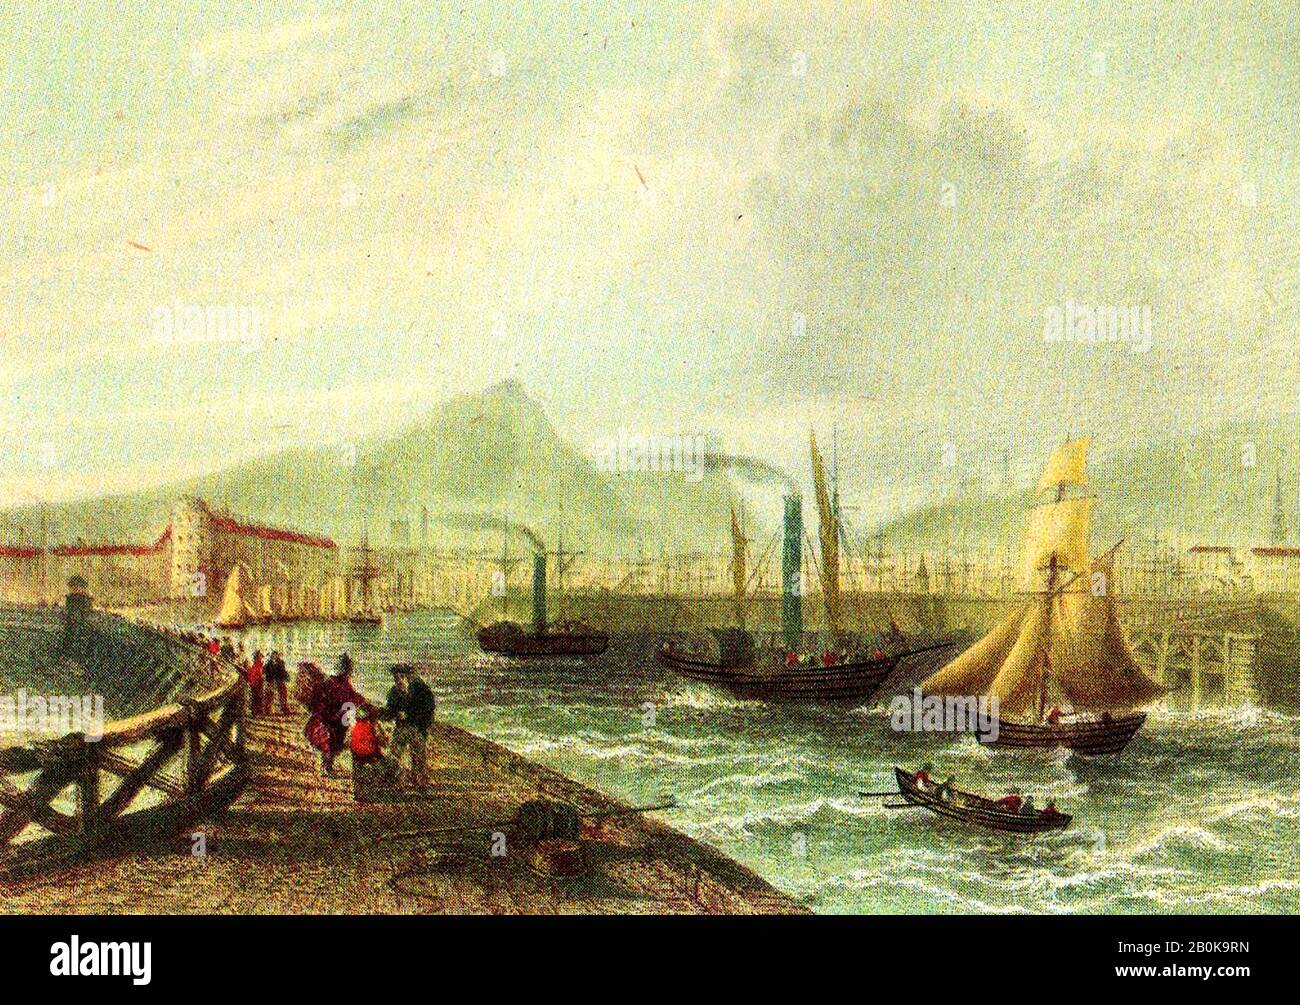 Eine historische farbige Gravur, die den Hafen von Greenock, Renfrewshire, Schottland, in den frühen 1800er Jahren zeigt. Etwa 1635 ließ Sir John Schaw einen Steg in die Bucht ausbauen, der als Sir John's Bay bekannt wurde Stockfoto